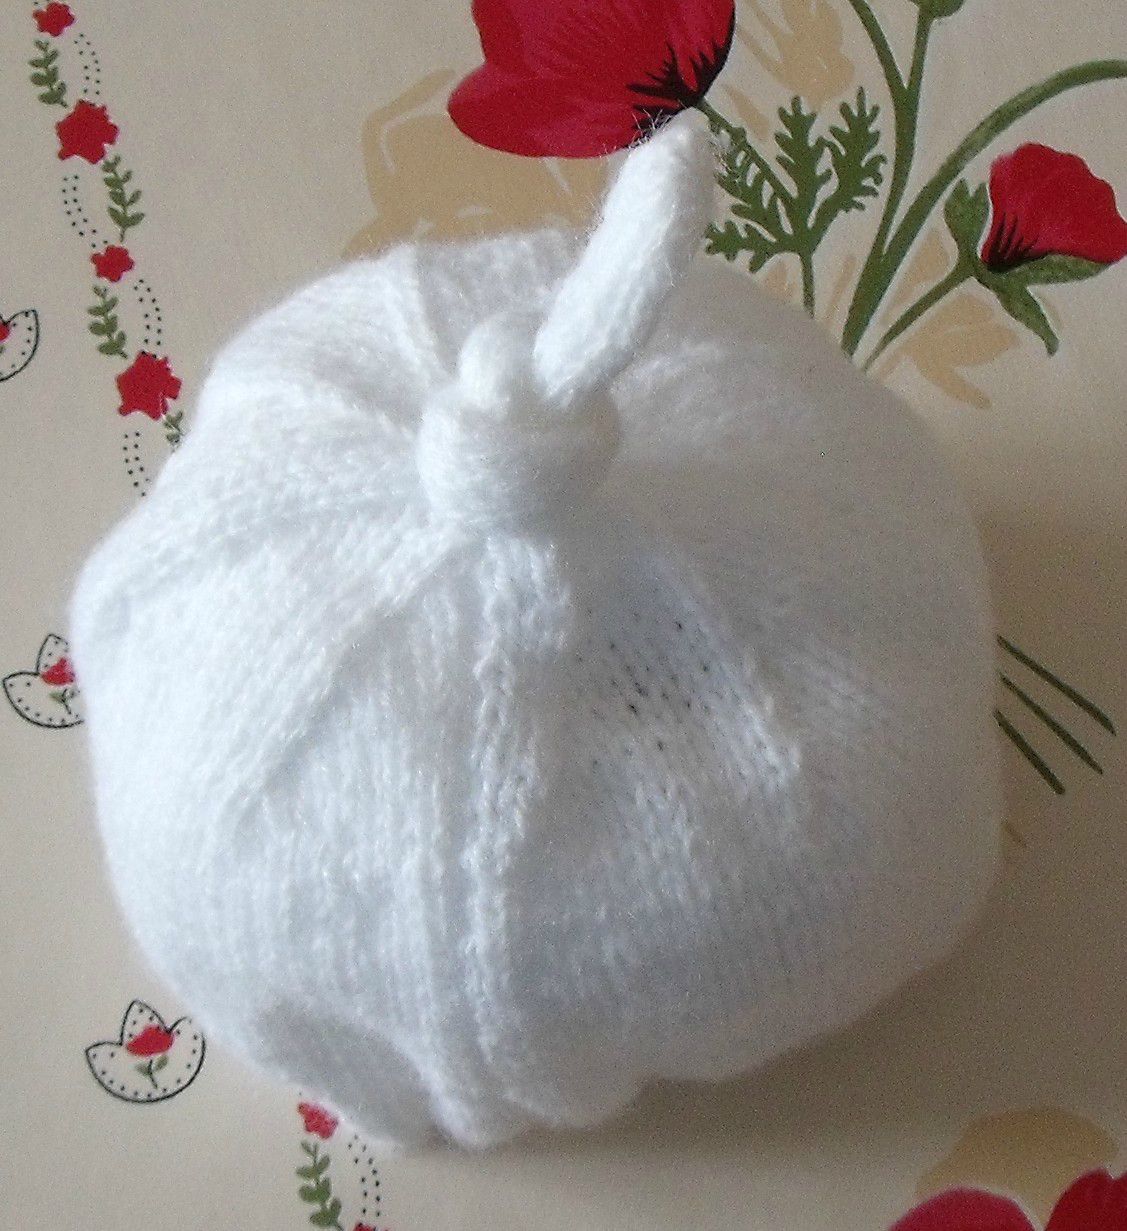 comment tricoter un bonnet bebe